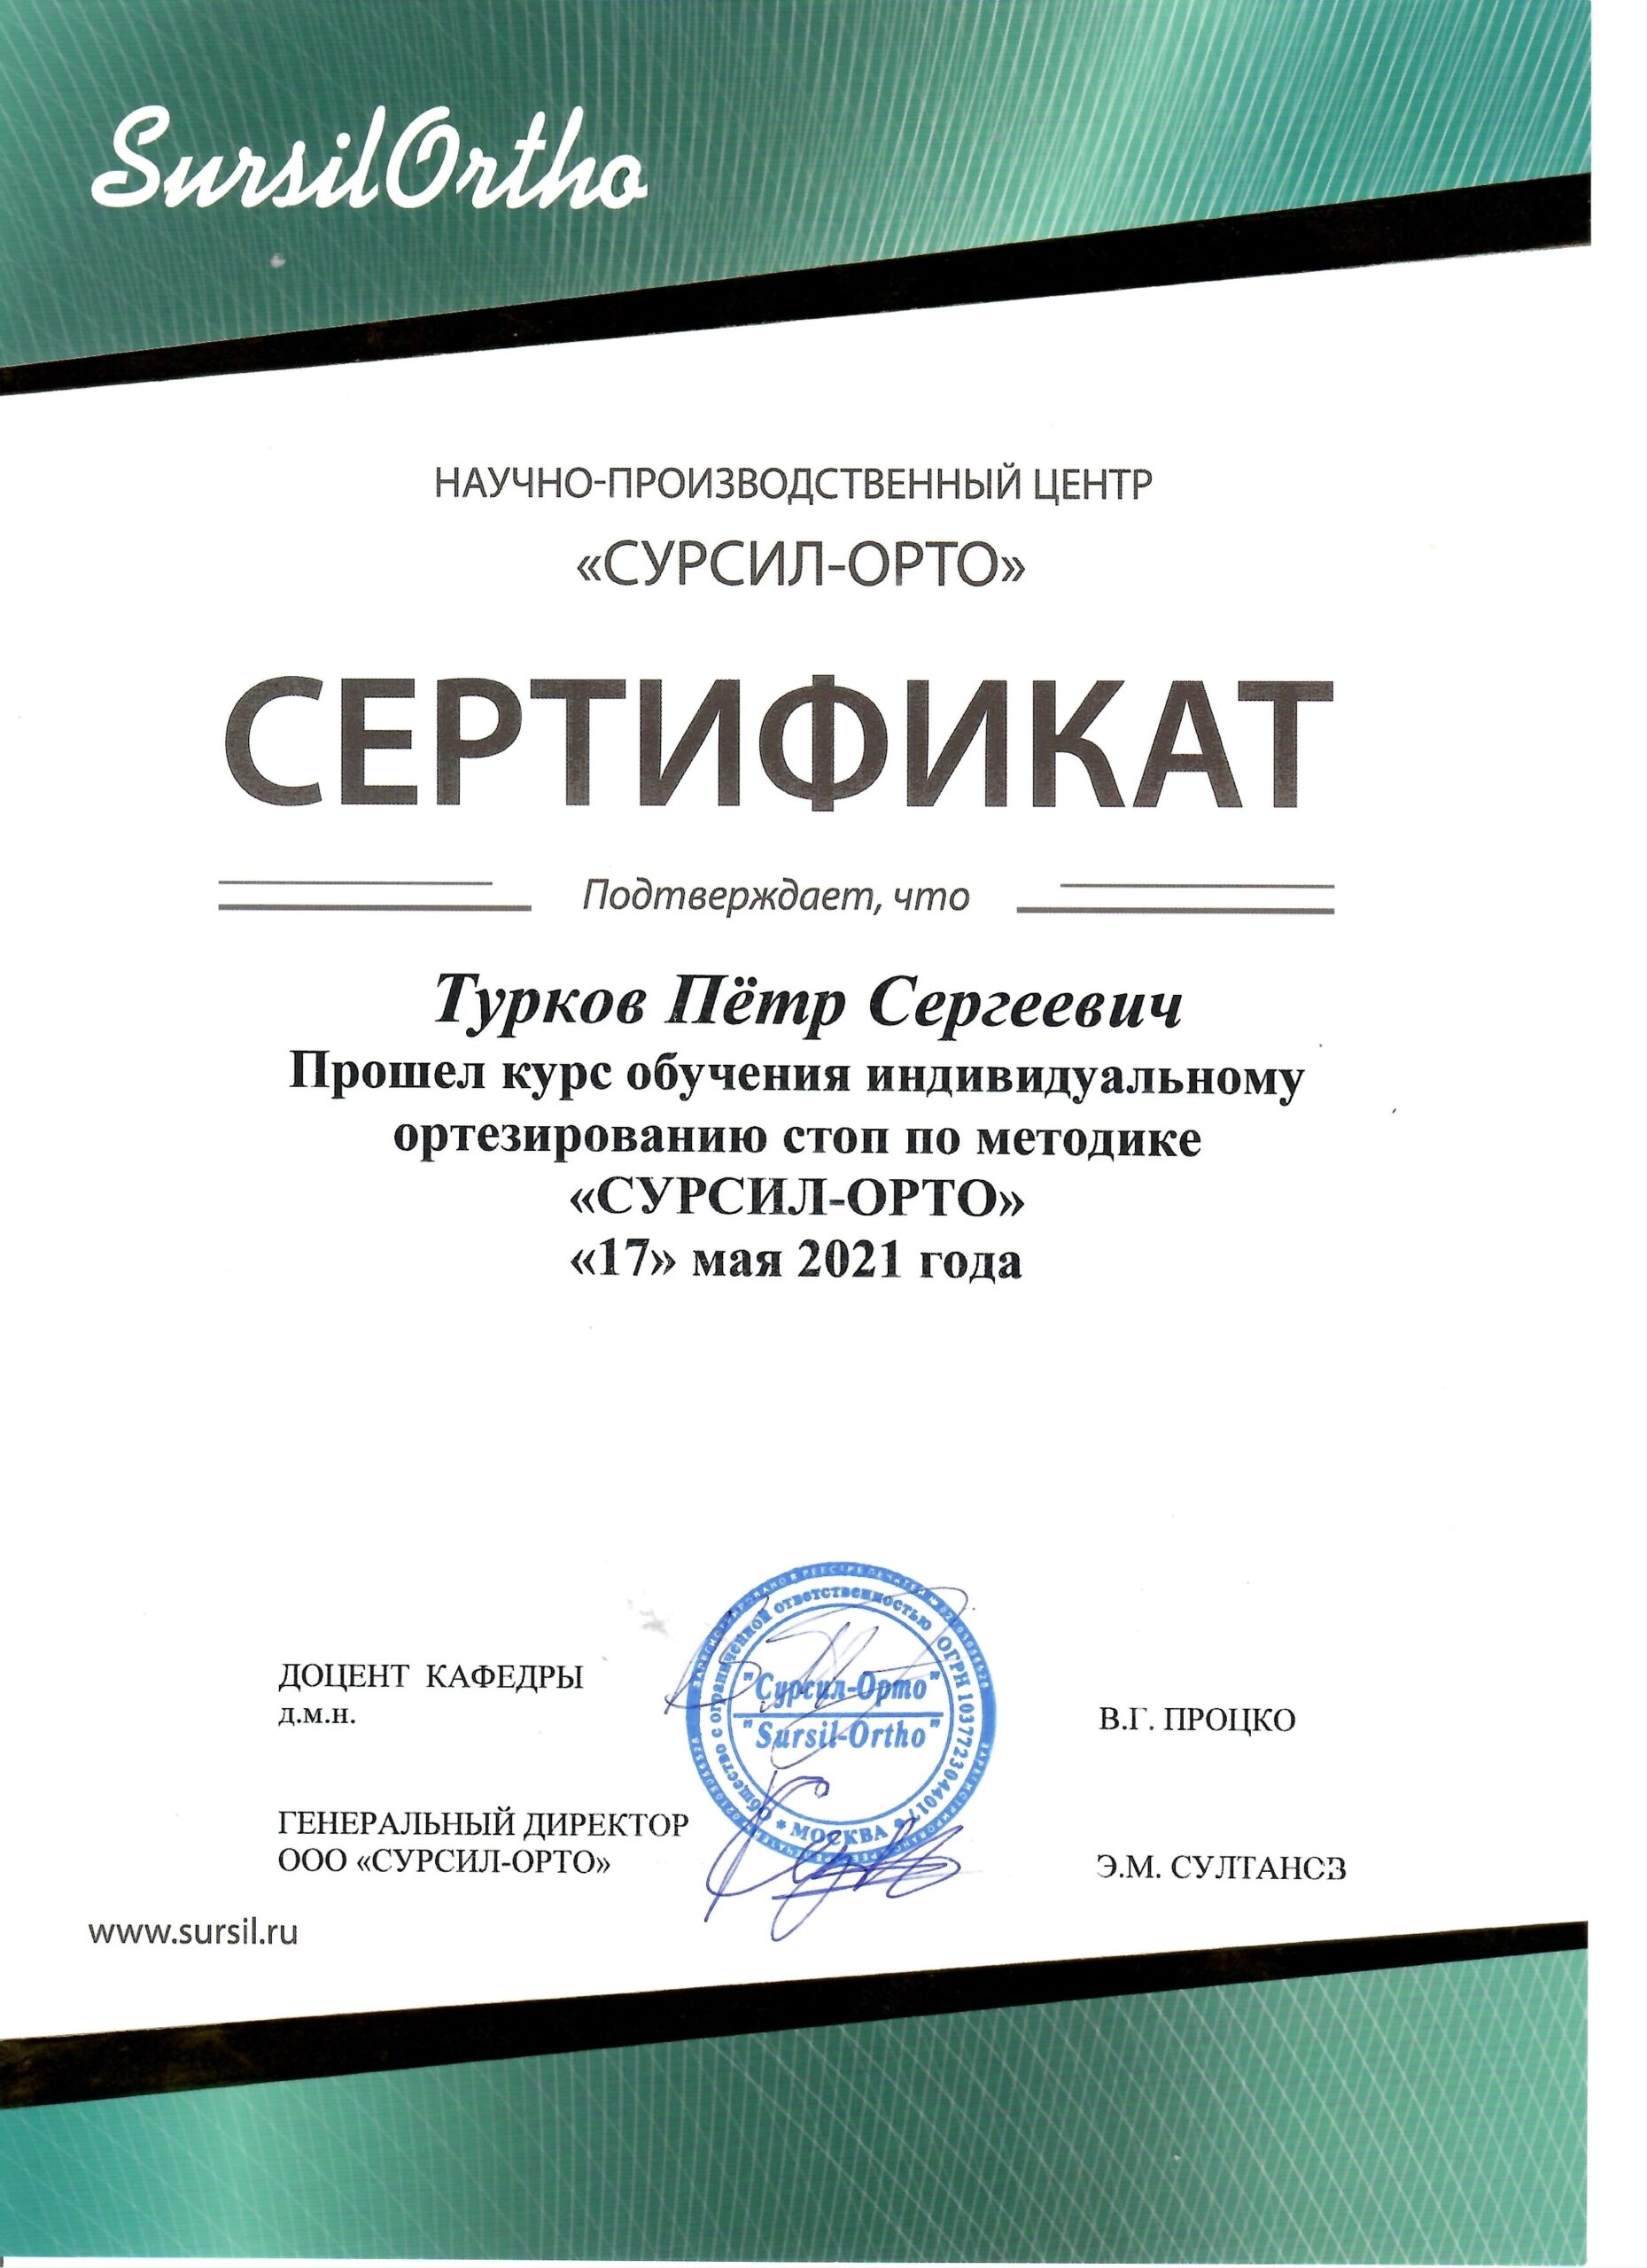 сертификат стопа